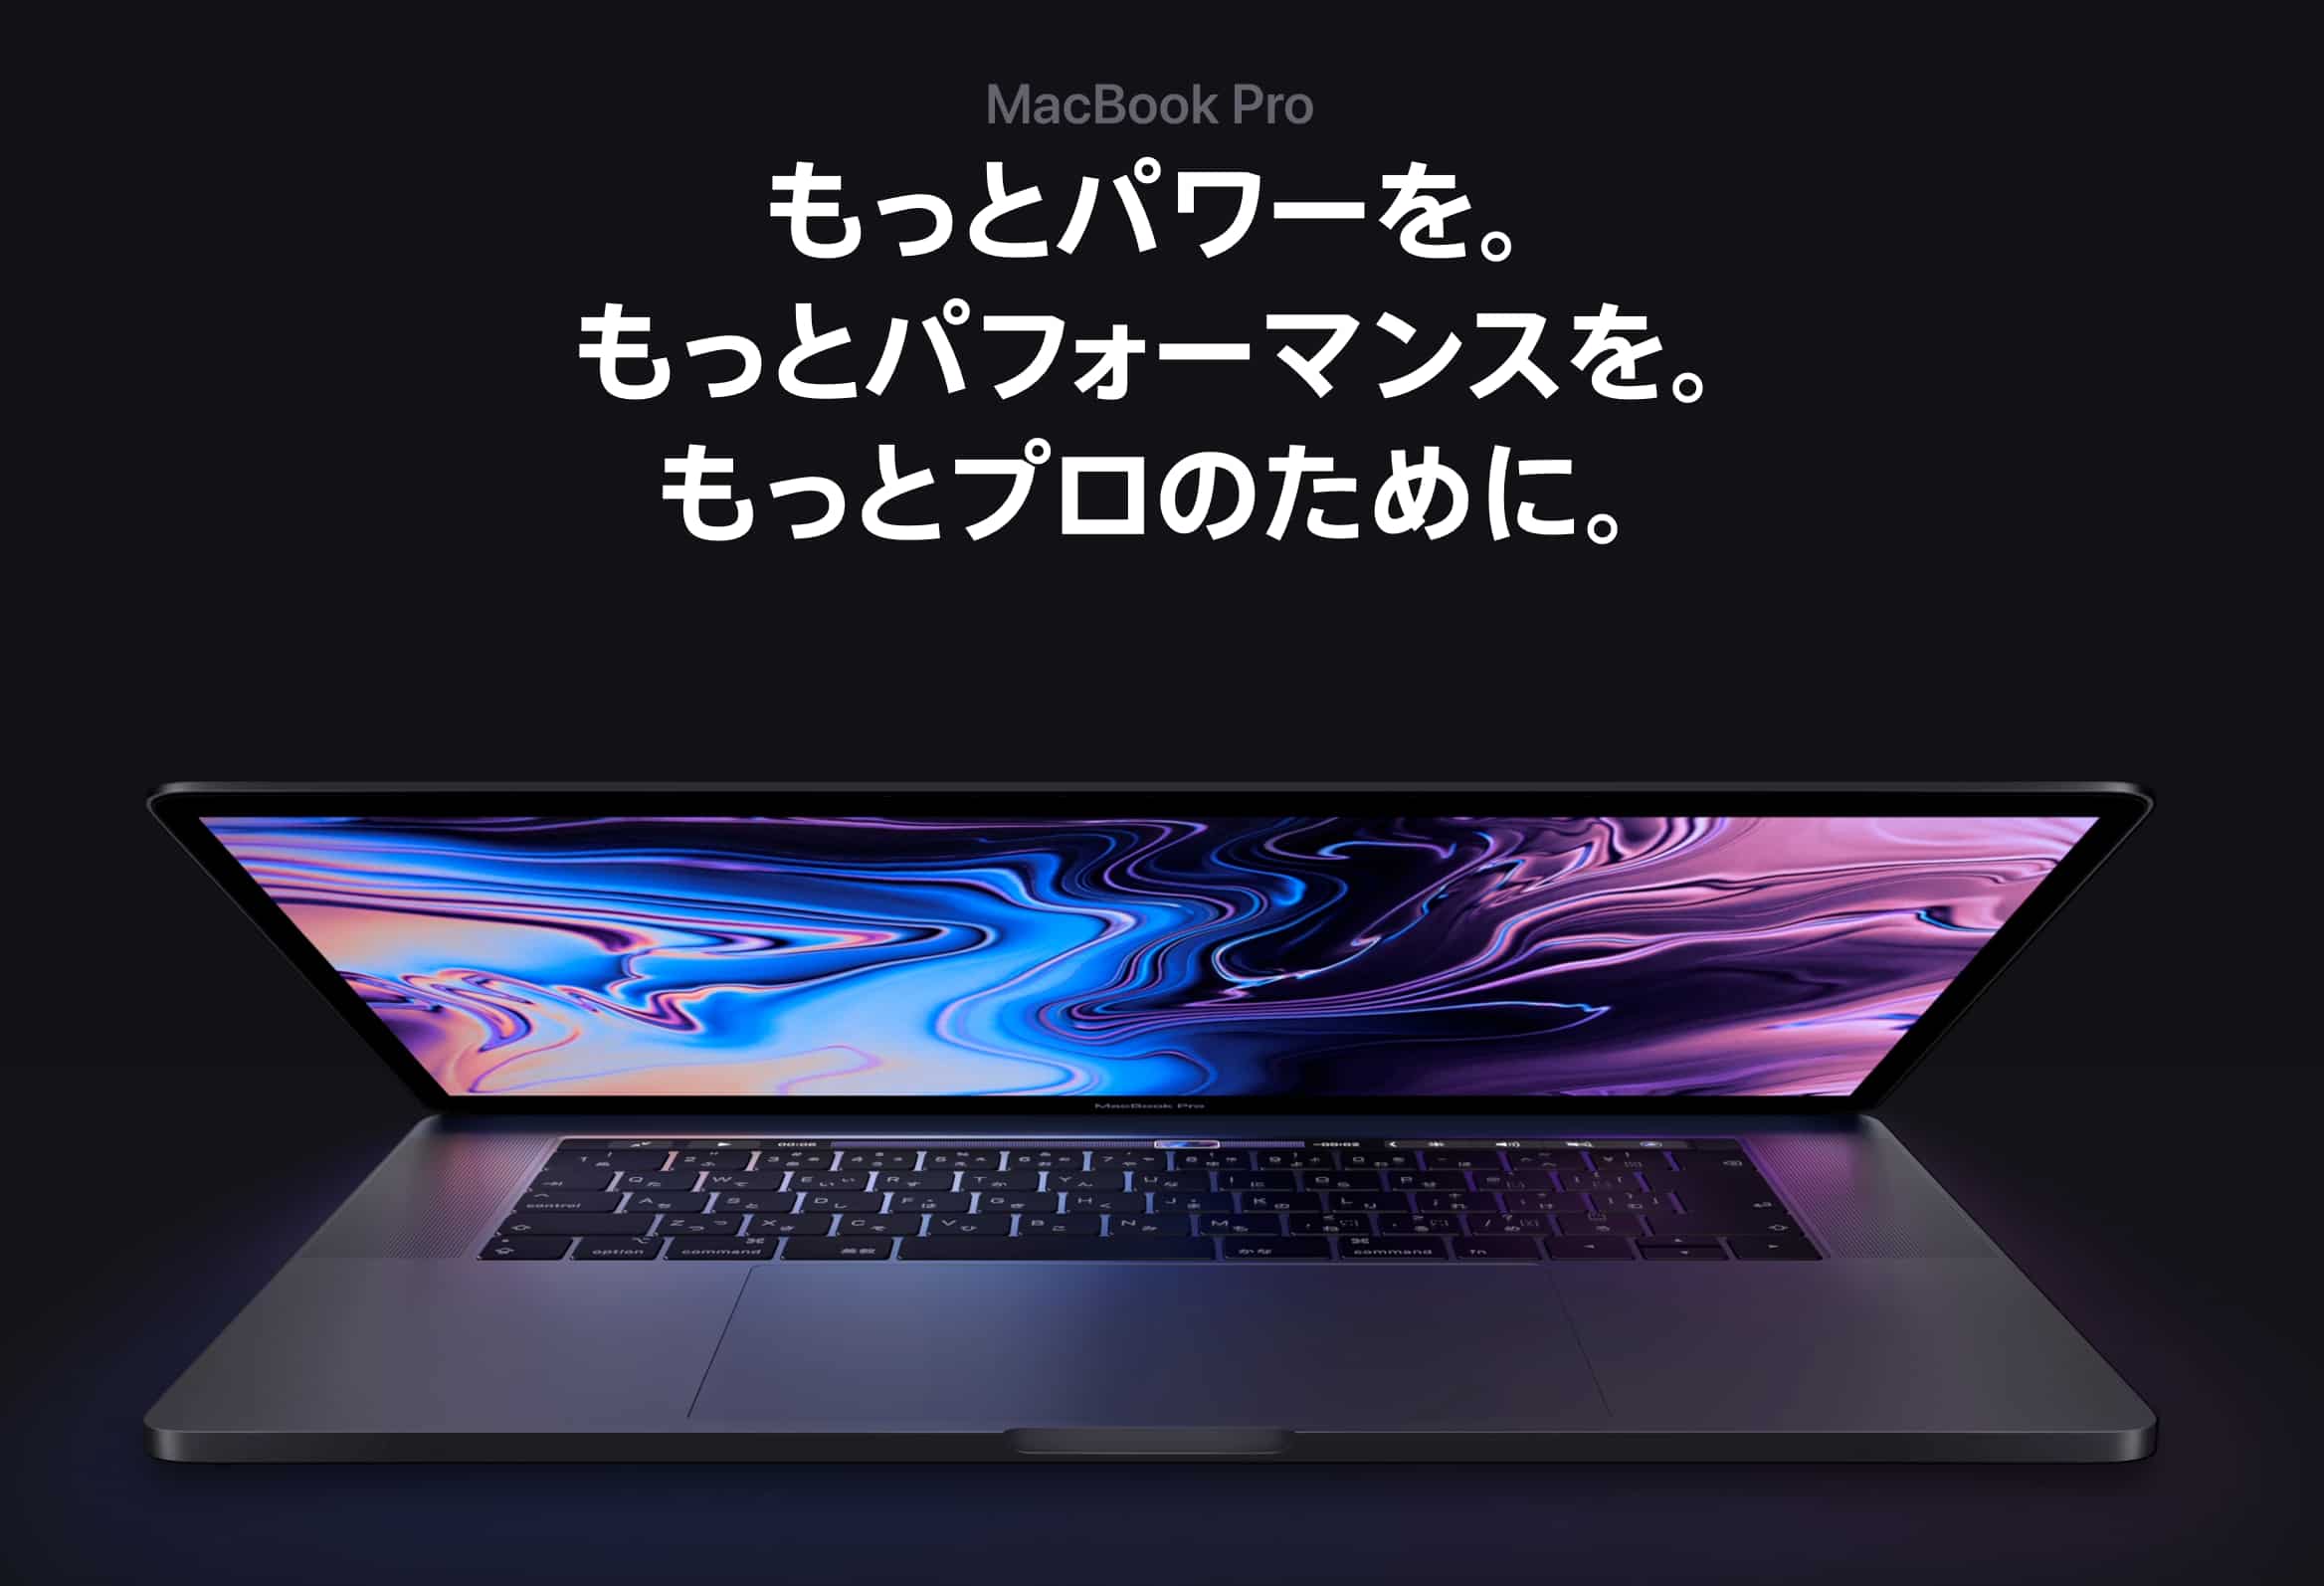 【新MacBook Pro発売】2018年版を買った一ヶ月後に2019年版MacBook Proが発表された